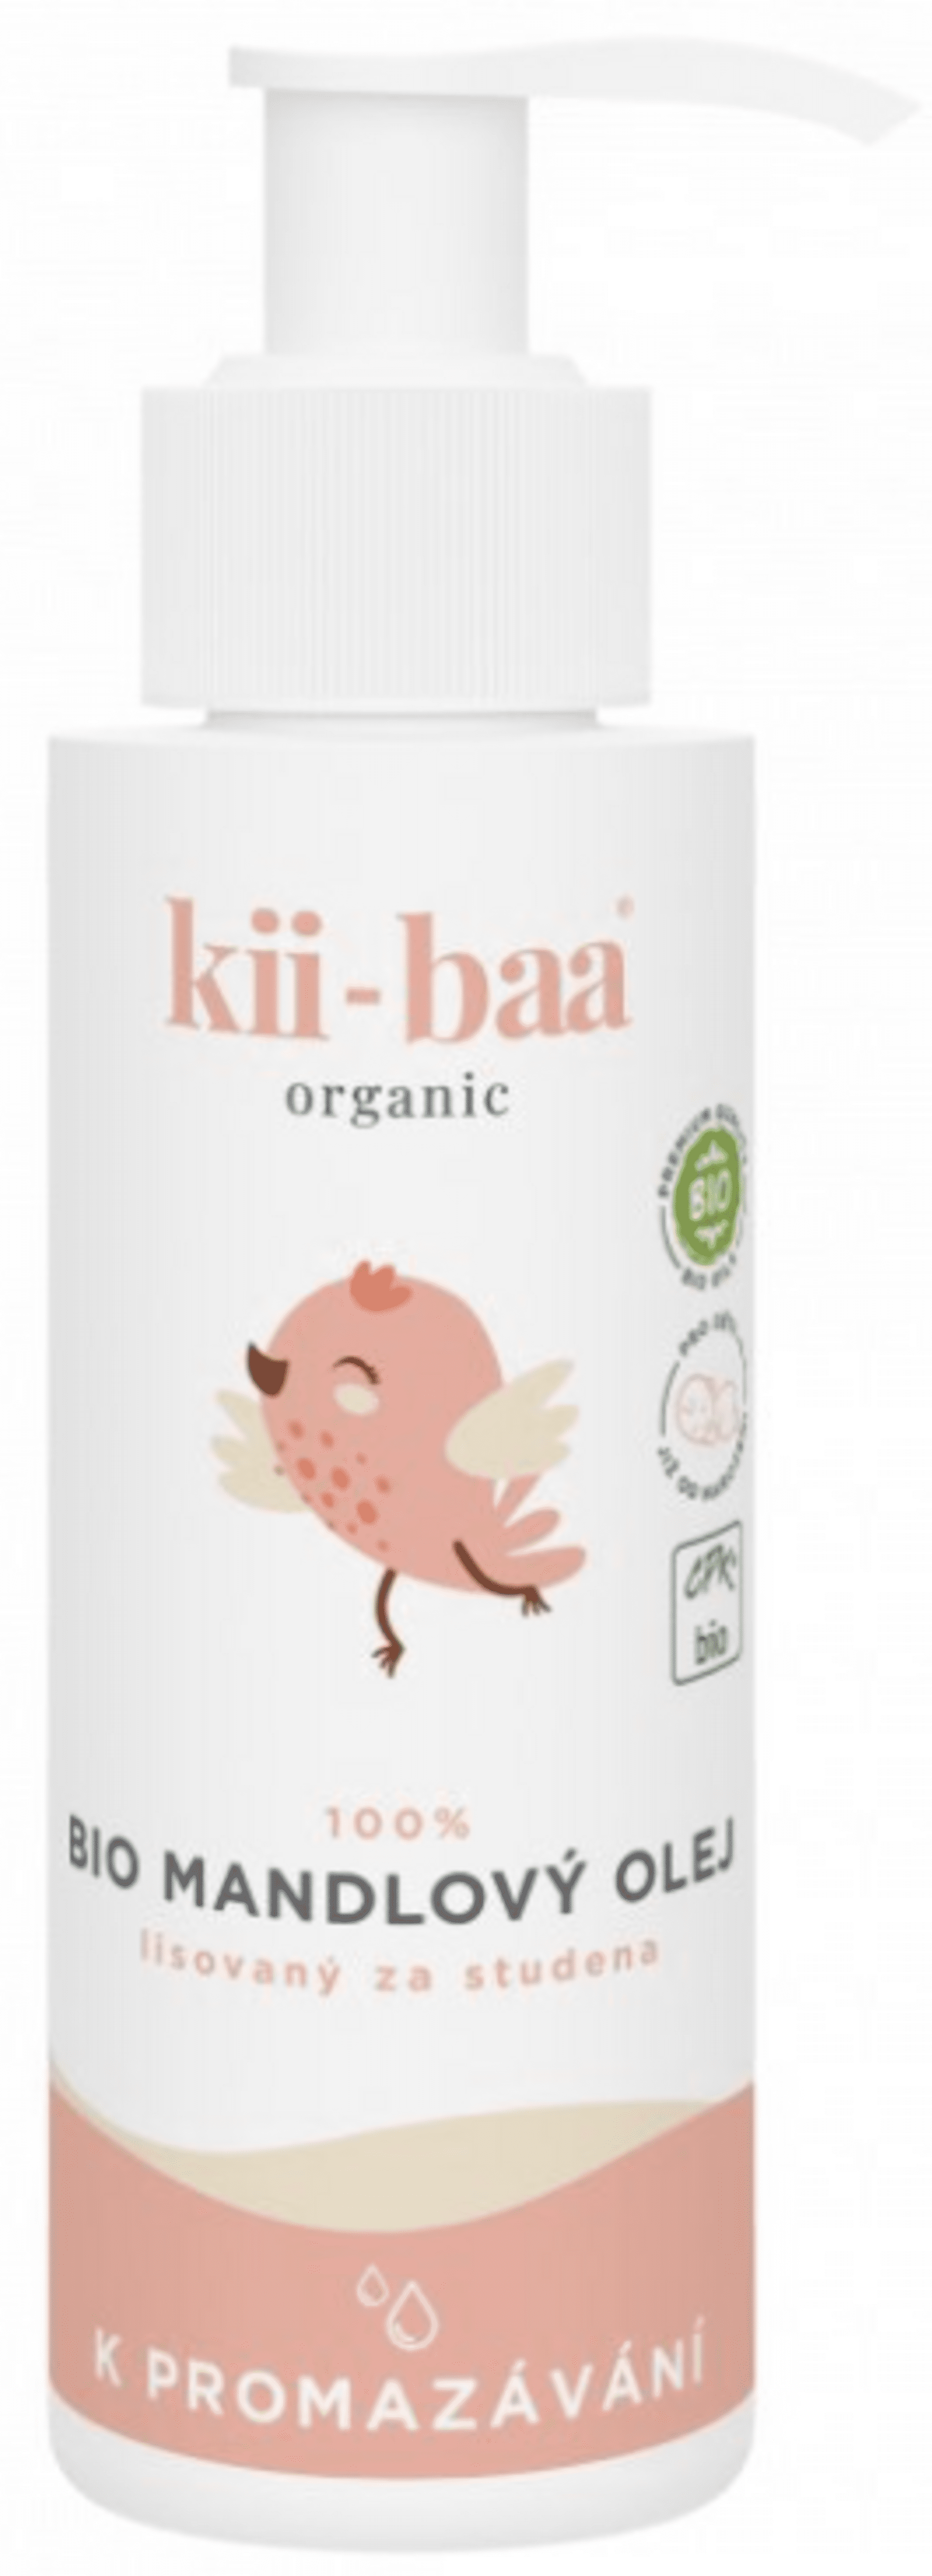 Levně Kii-baa organic 100% Mandlový olej 0+ k promazávání BIO 100 ml